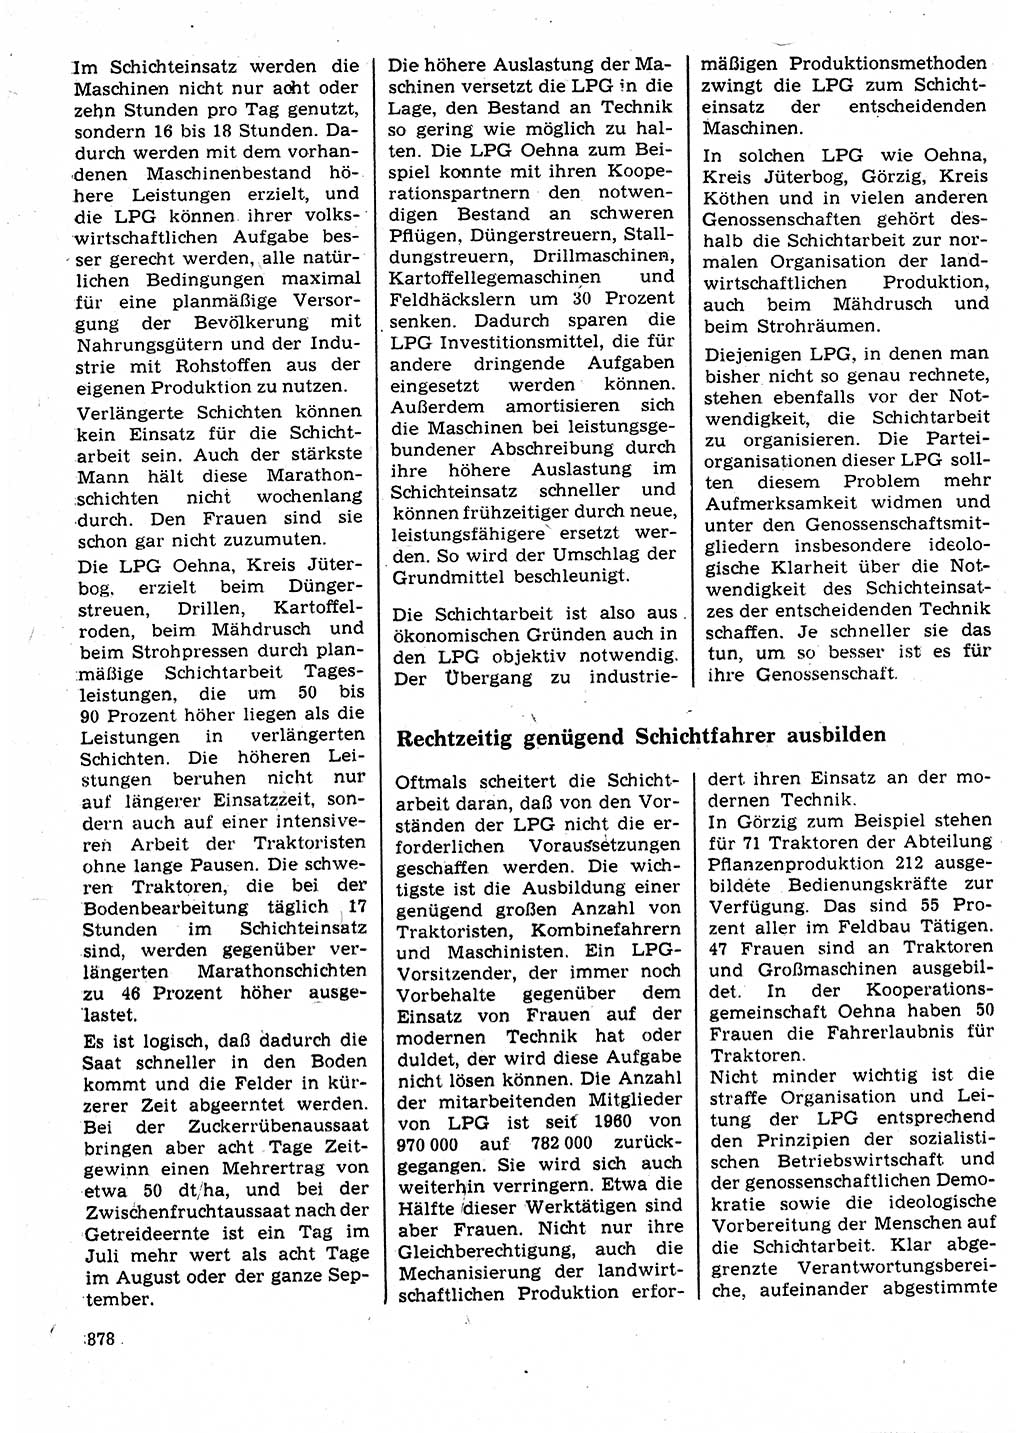 Neuer Weg (NW), Organ des Zentralkomitees (ZK) der SED (Sozialistische Einheitspartei Deutschlands) für Fragen des Parteilebens, 25. Jahrgang [Deutsche Demokratische Republik (DDR)] 1970, Seite 878 (NW ZK SED DDR 1970, S. 878)